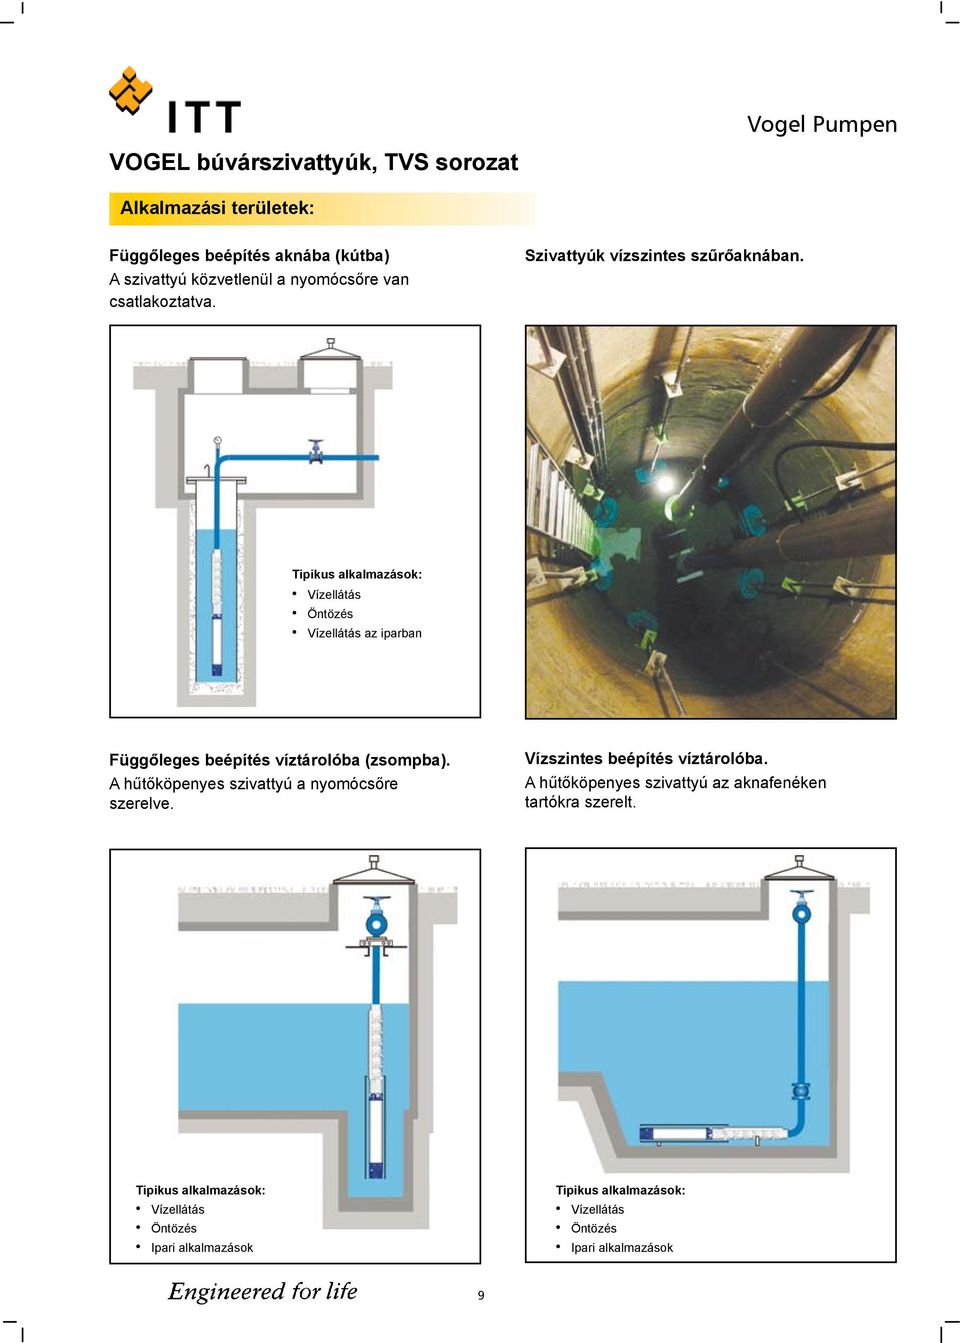 Tipikus alkalmazások: Vízellátás Öntözés Vízellátás az iparban Függőleges beépítés víztárolóba (zsompba).